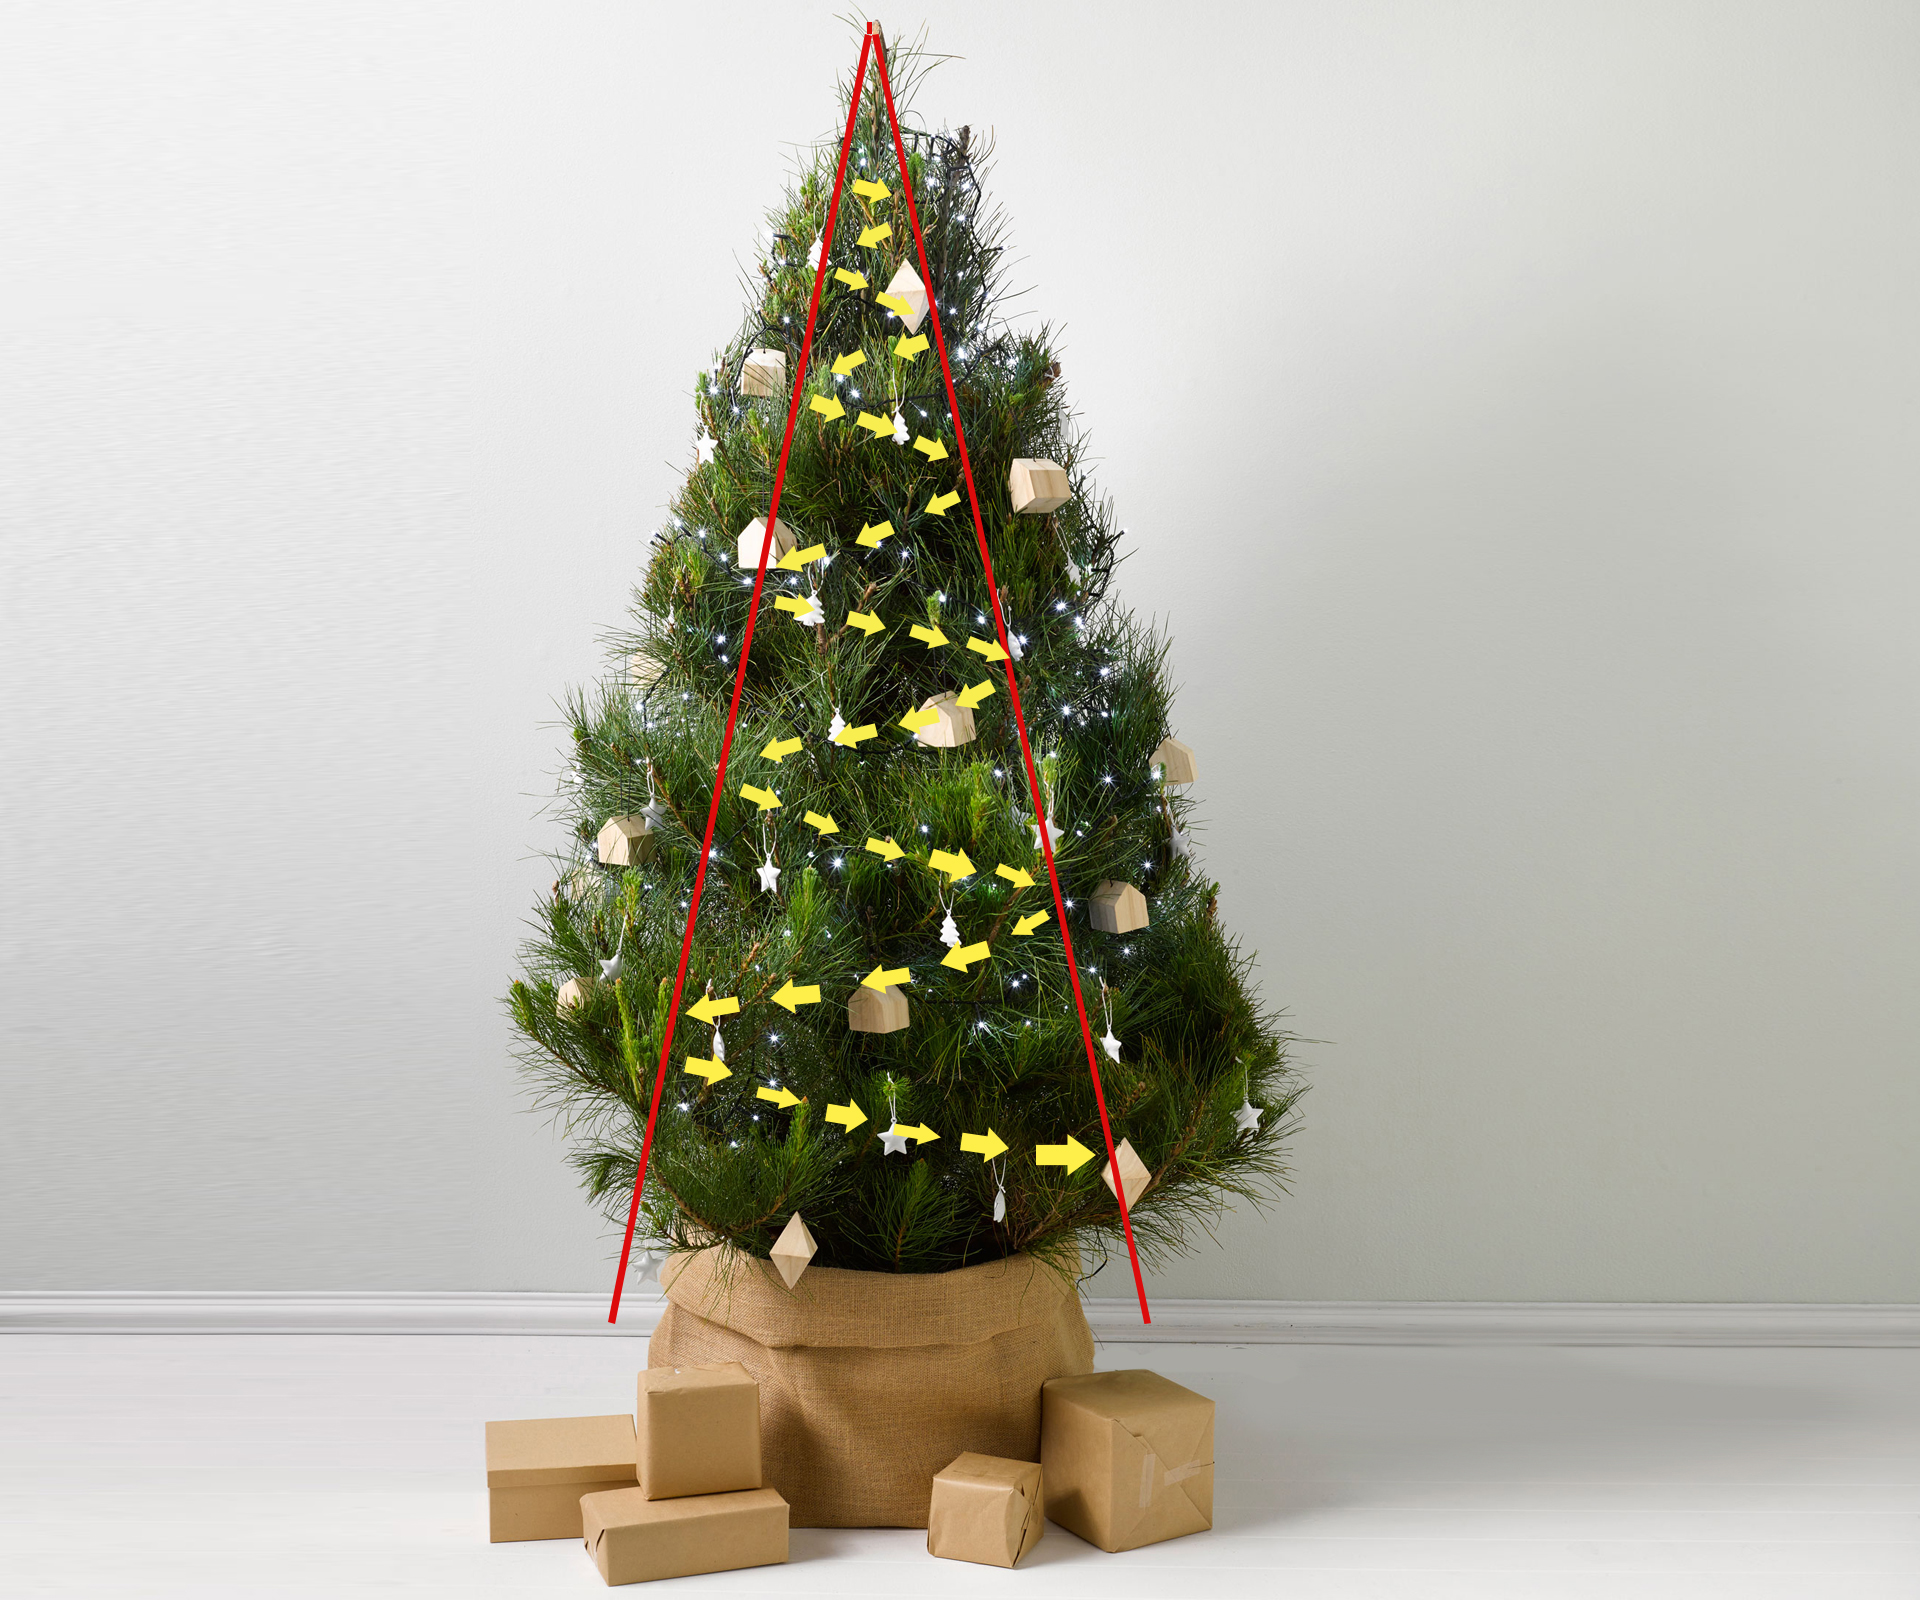 How to hang Christmas tree lights 